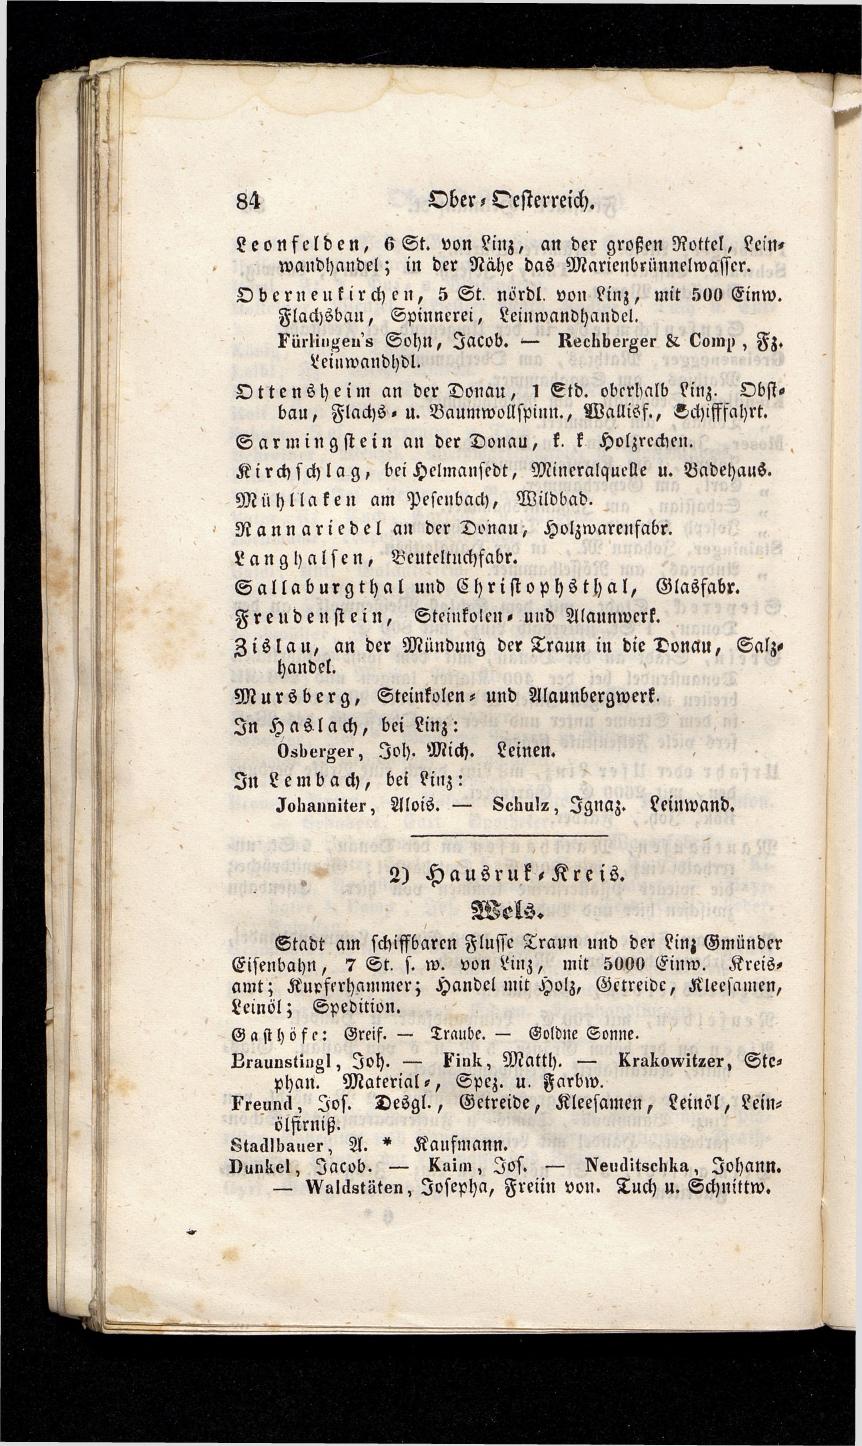 Grosses Adressbuch der Kaufleute. No. 13. Oesterreich ober u. unter der Enns 1844 - Seite 88